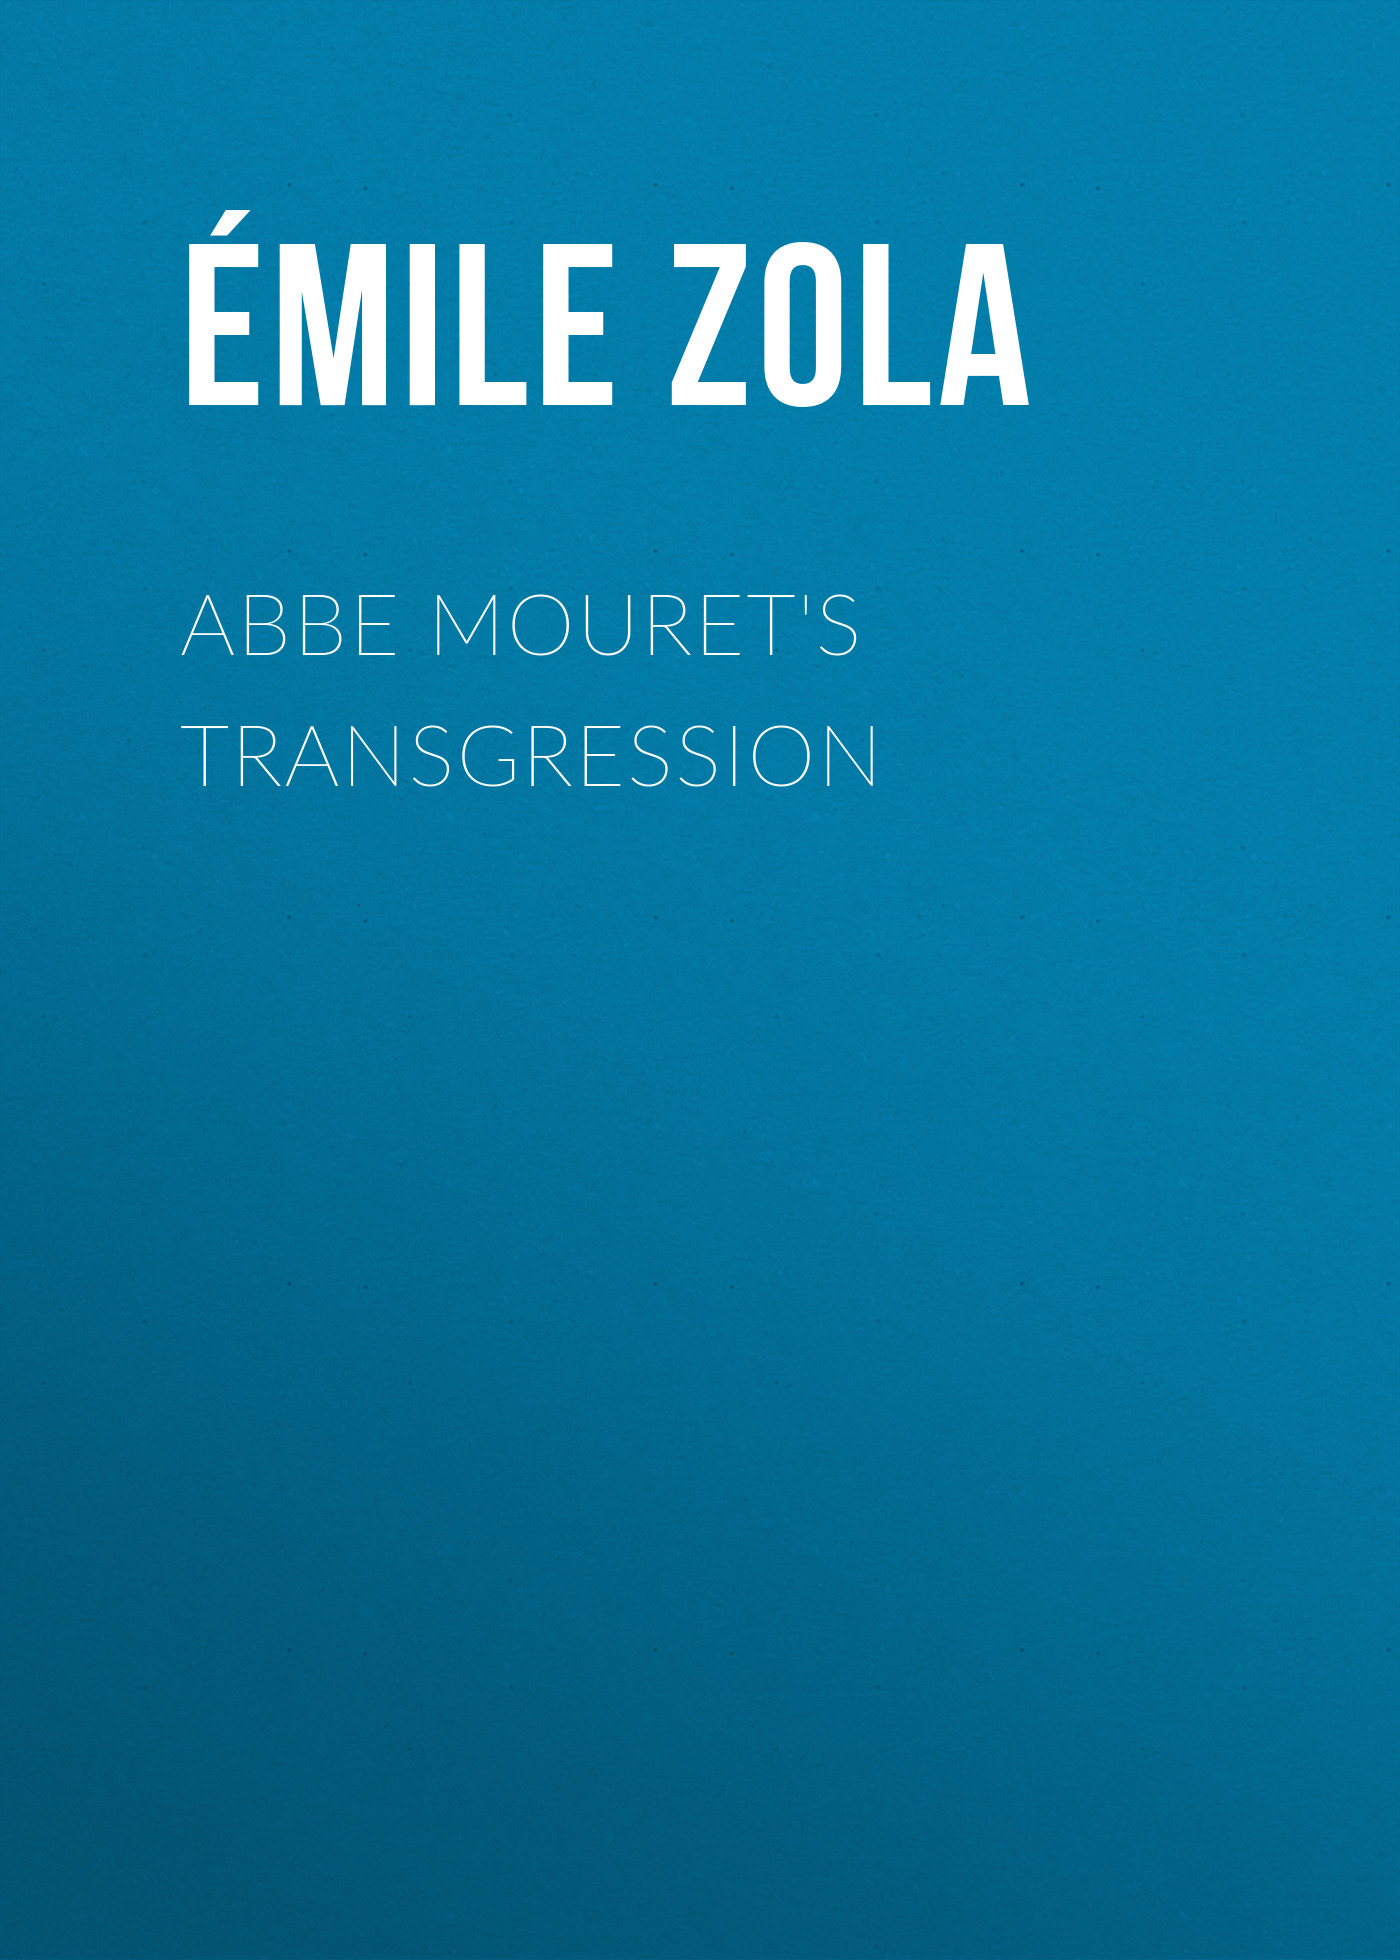 Книга Abbe Mouret's Transgression из серии , созданная Émile Zola, может относится к жанру Литература 19 века, Зарубежная старинная литература, Зарубежная классика. Стоимость электронной книги Abbe Mouret's Transgression с идентификатором 25559708 составляет 0 руб.